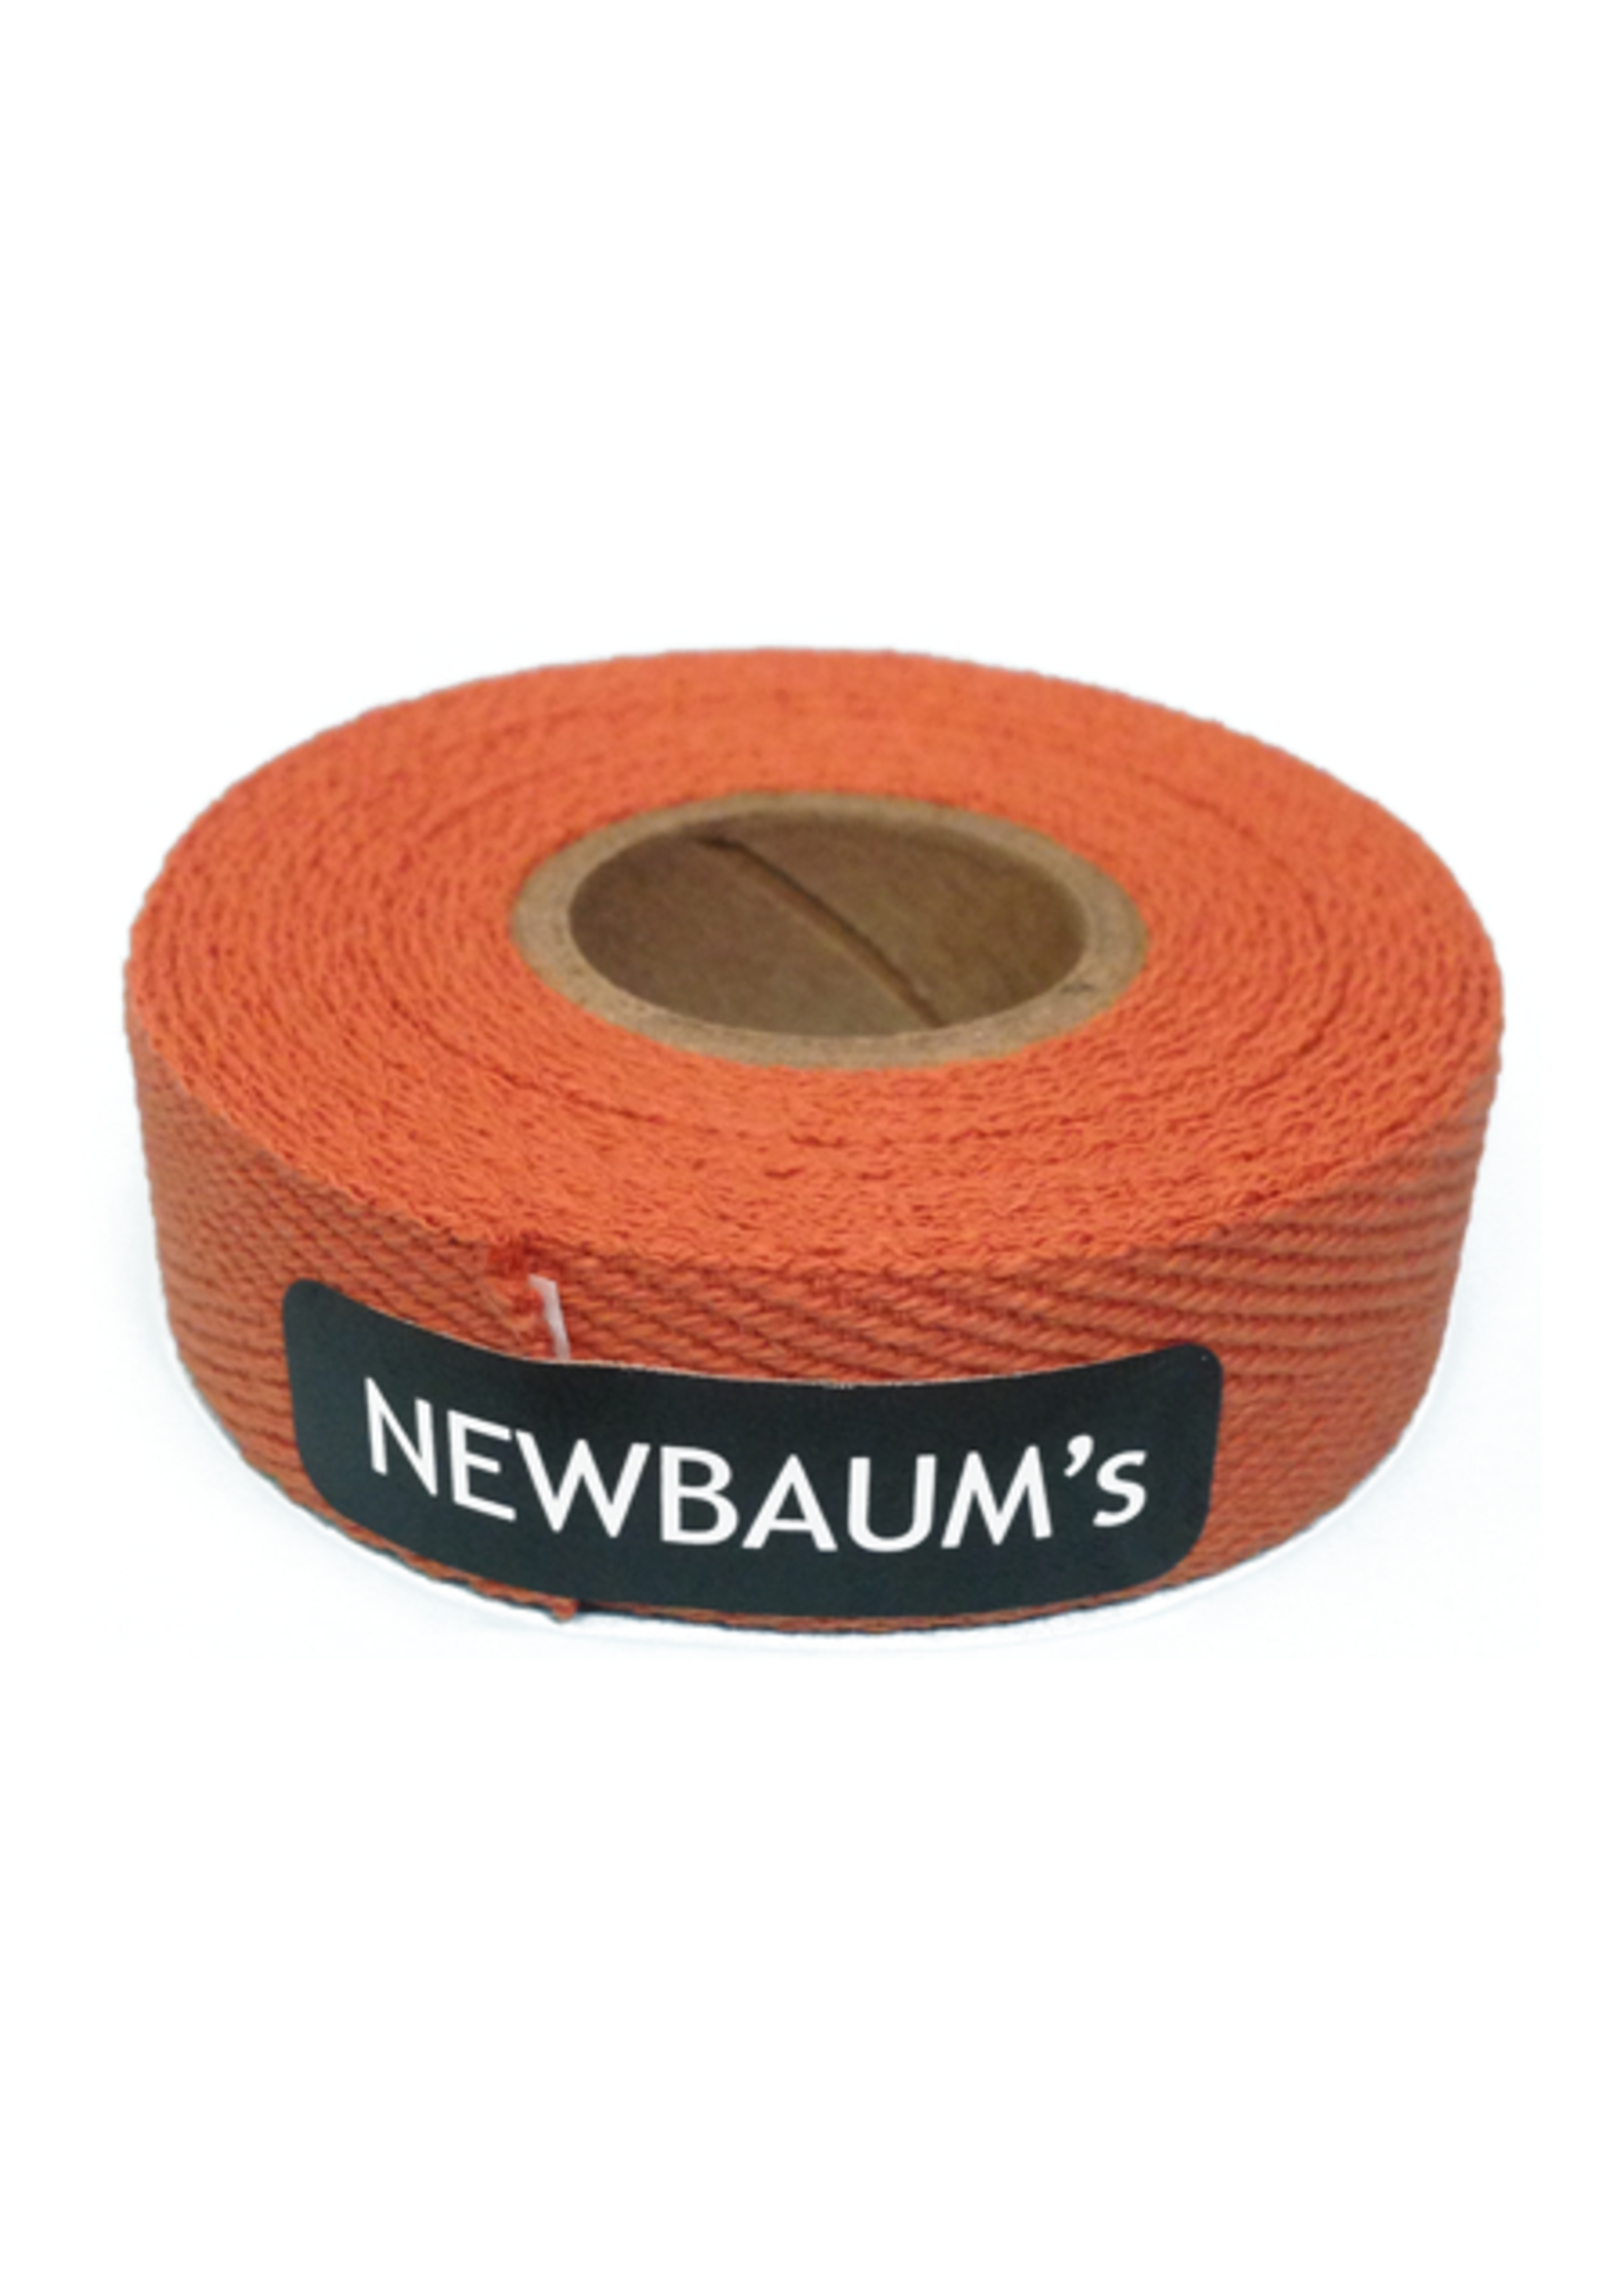 Newbaum's NEWBAUM'S Nastro Per Maniglie Colore Arancio